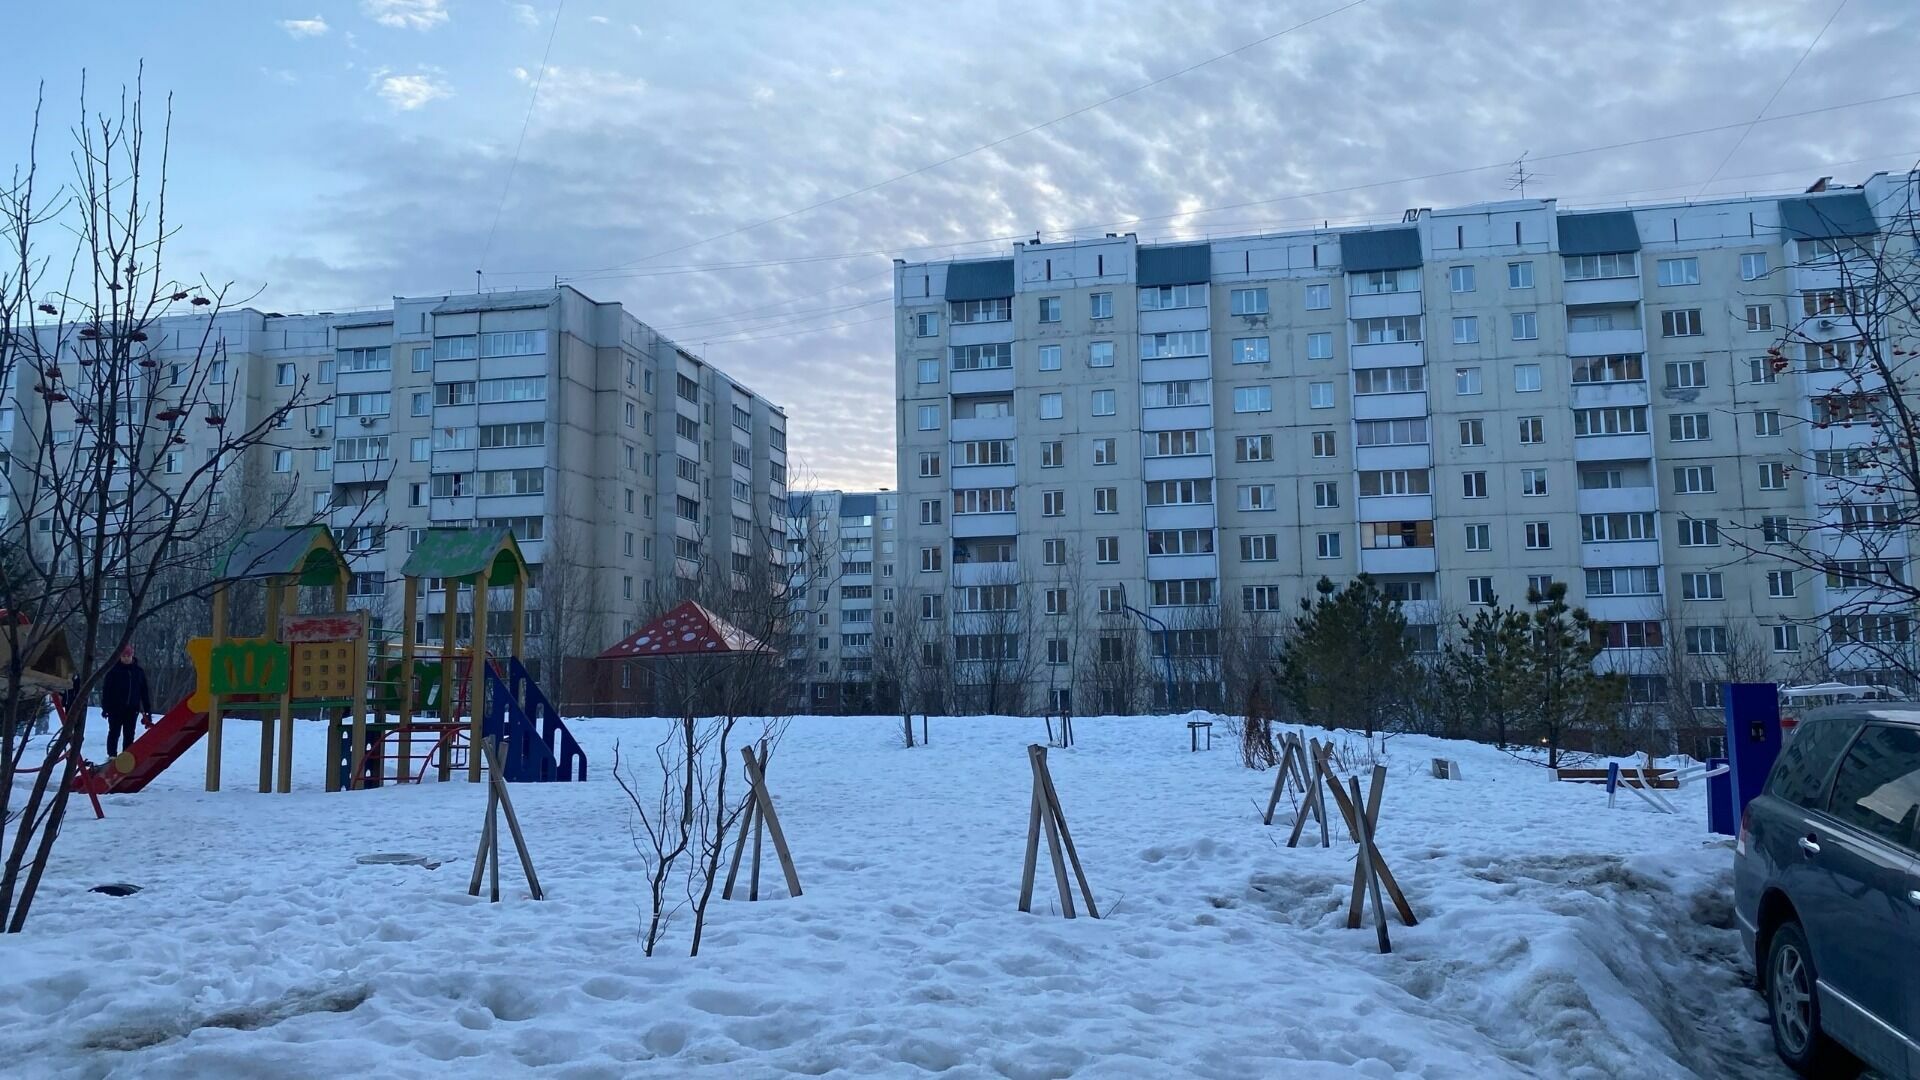 Дома, которые строит ГК "Дискус" в Новосибирске, микрорайон Плющихинский.